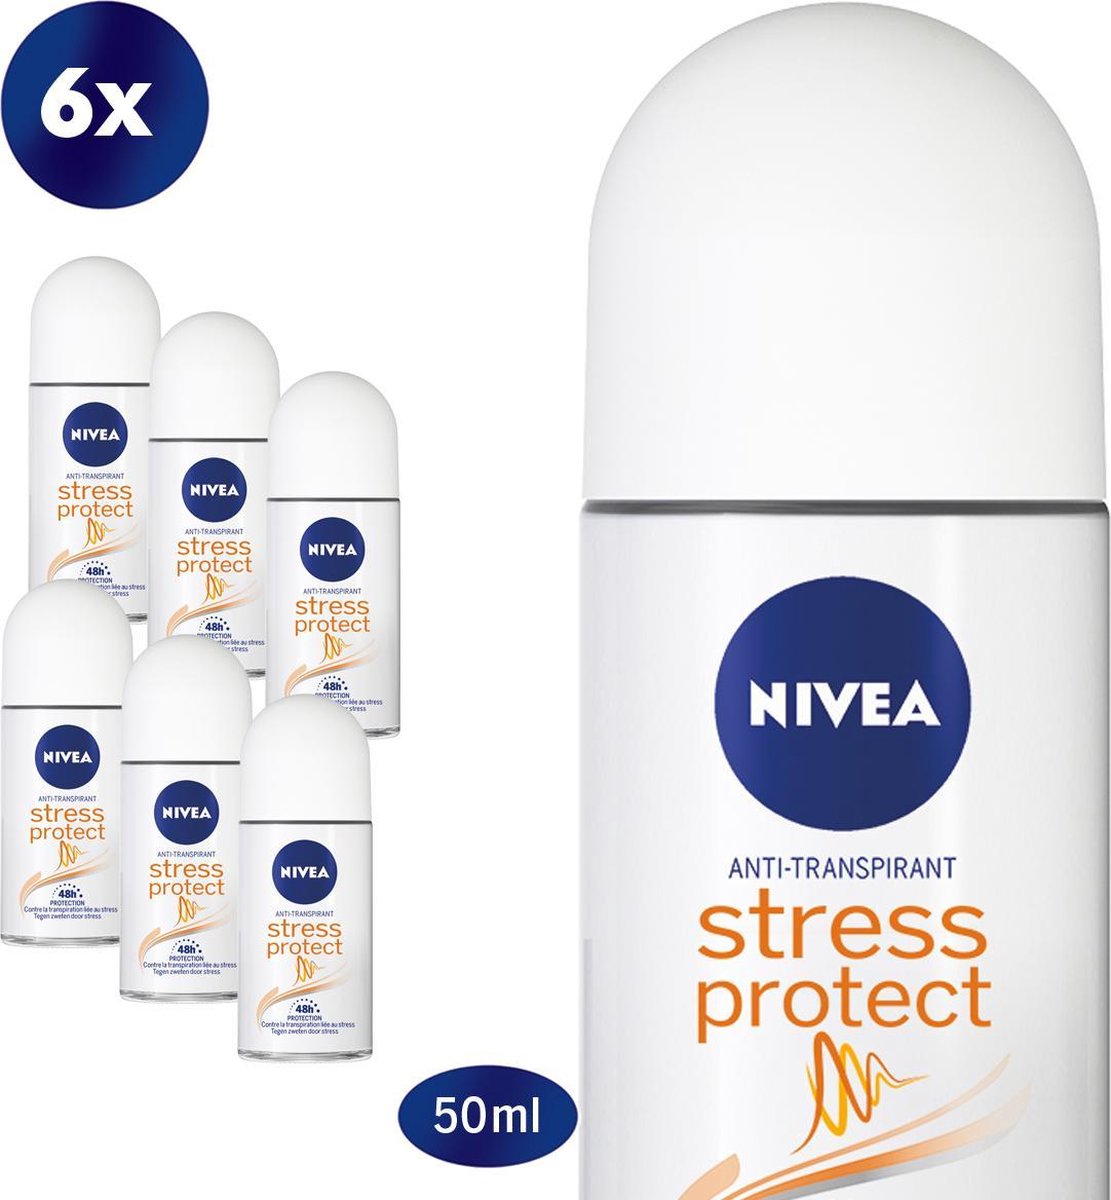 NIVEA Stress Protect - 6 x 50 ml - Voordeelverpakking - Deodorant Roller - NIVEA